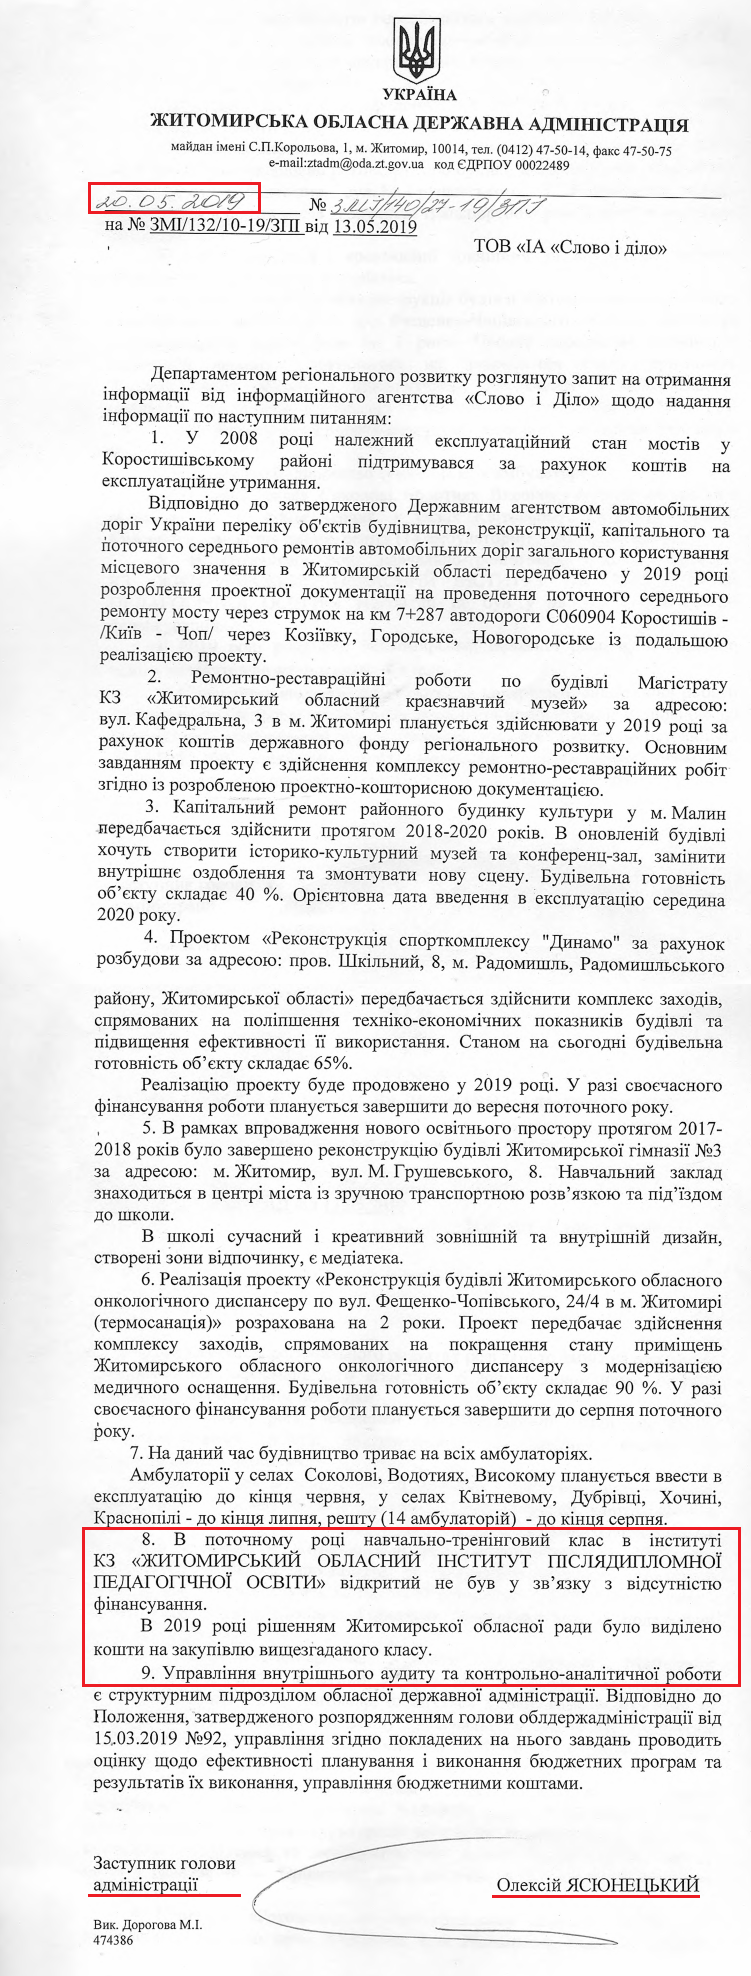 Лист заступника голови адміністрації О. Чсюнецького